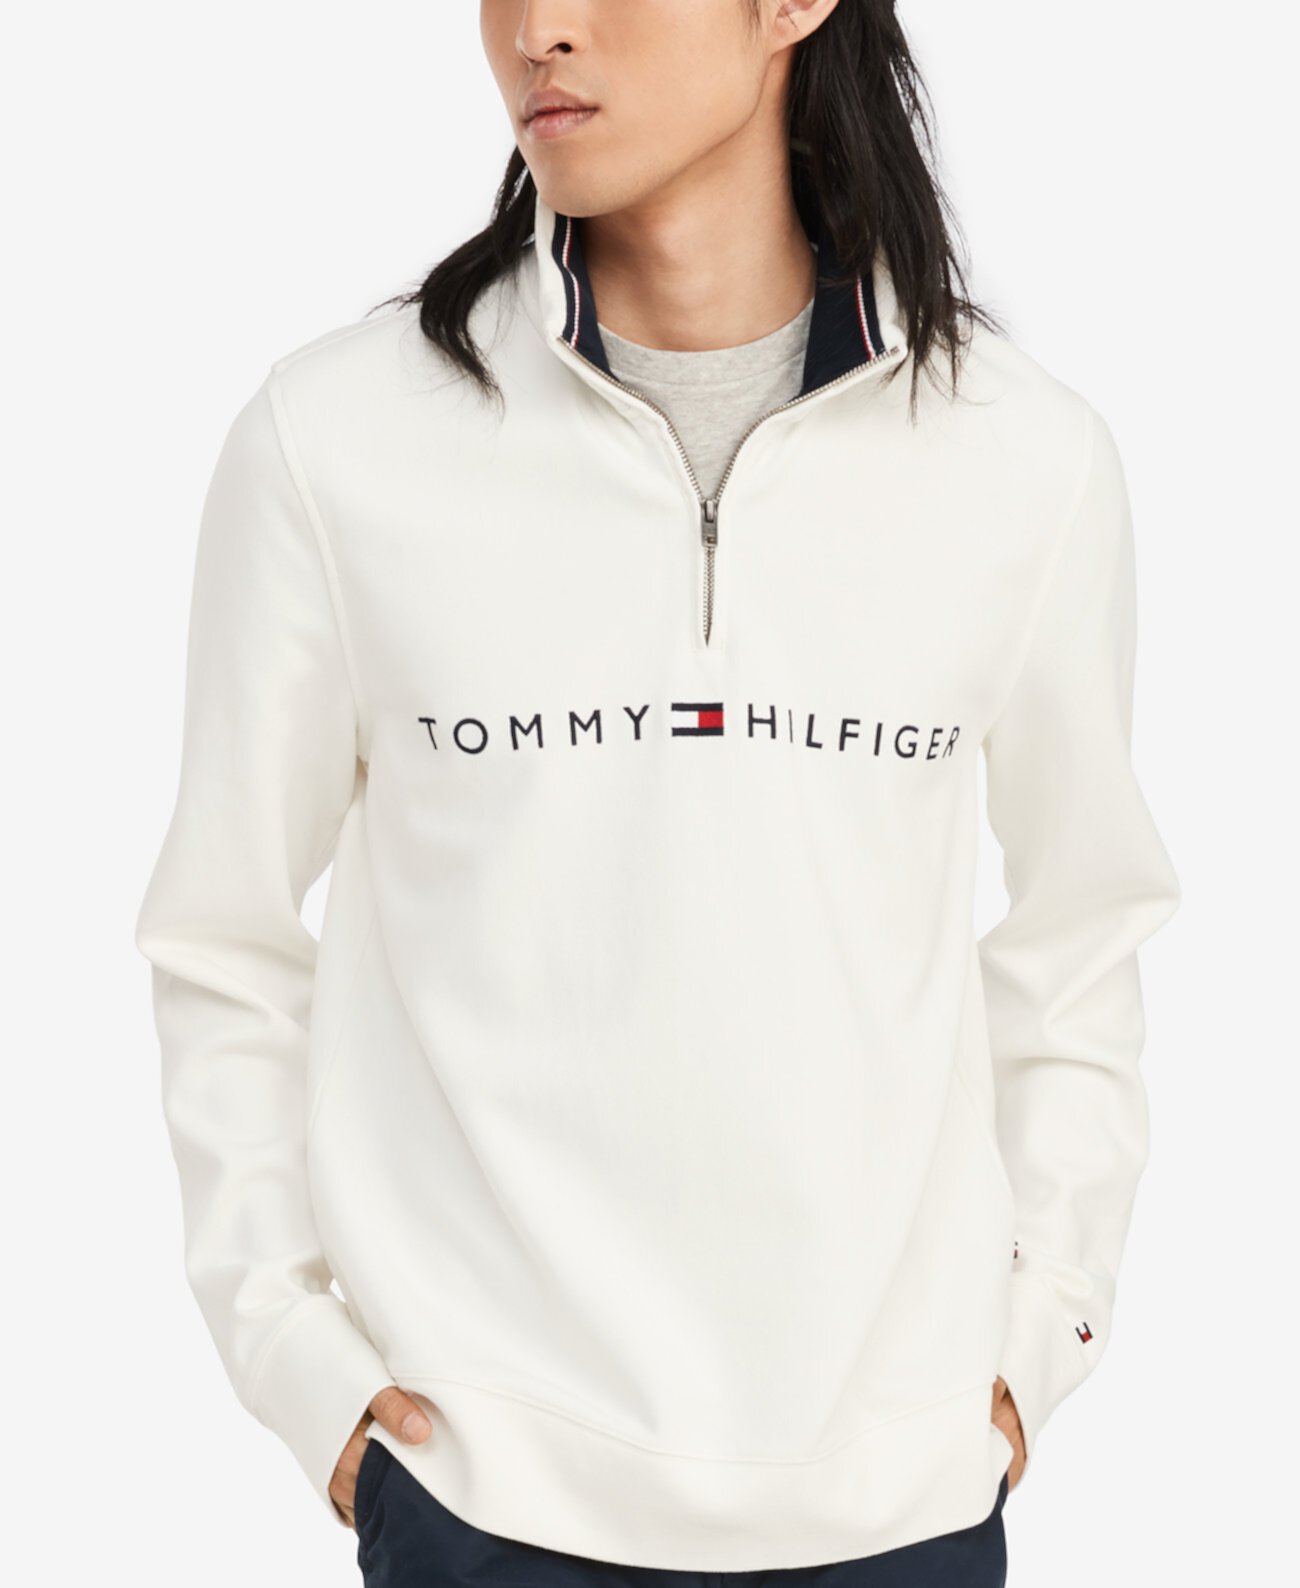 Мужской пуловер с французскими рёбрами на молнии Tommy Hilfiger